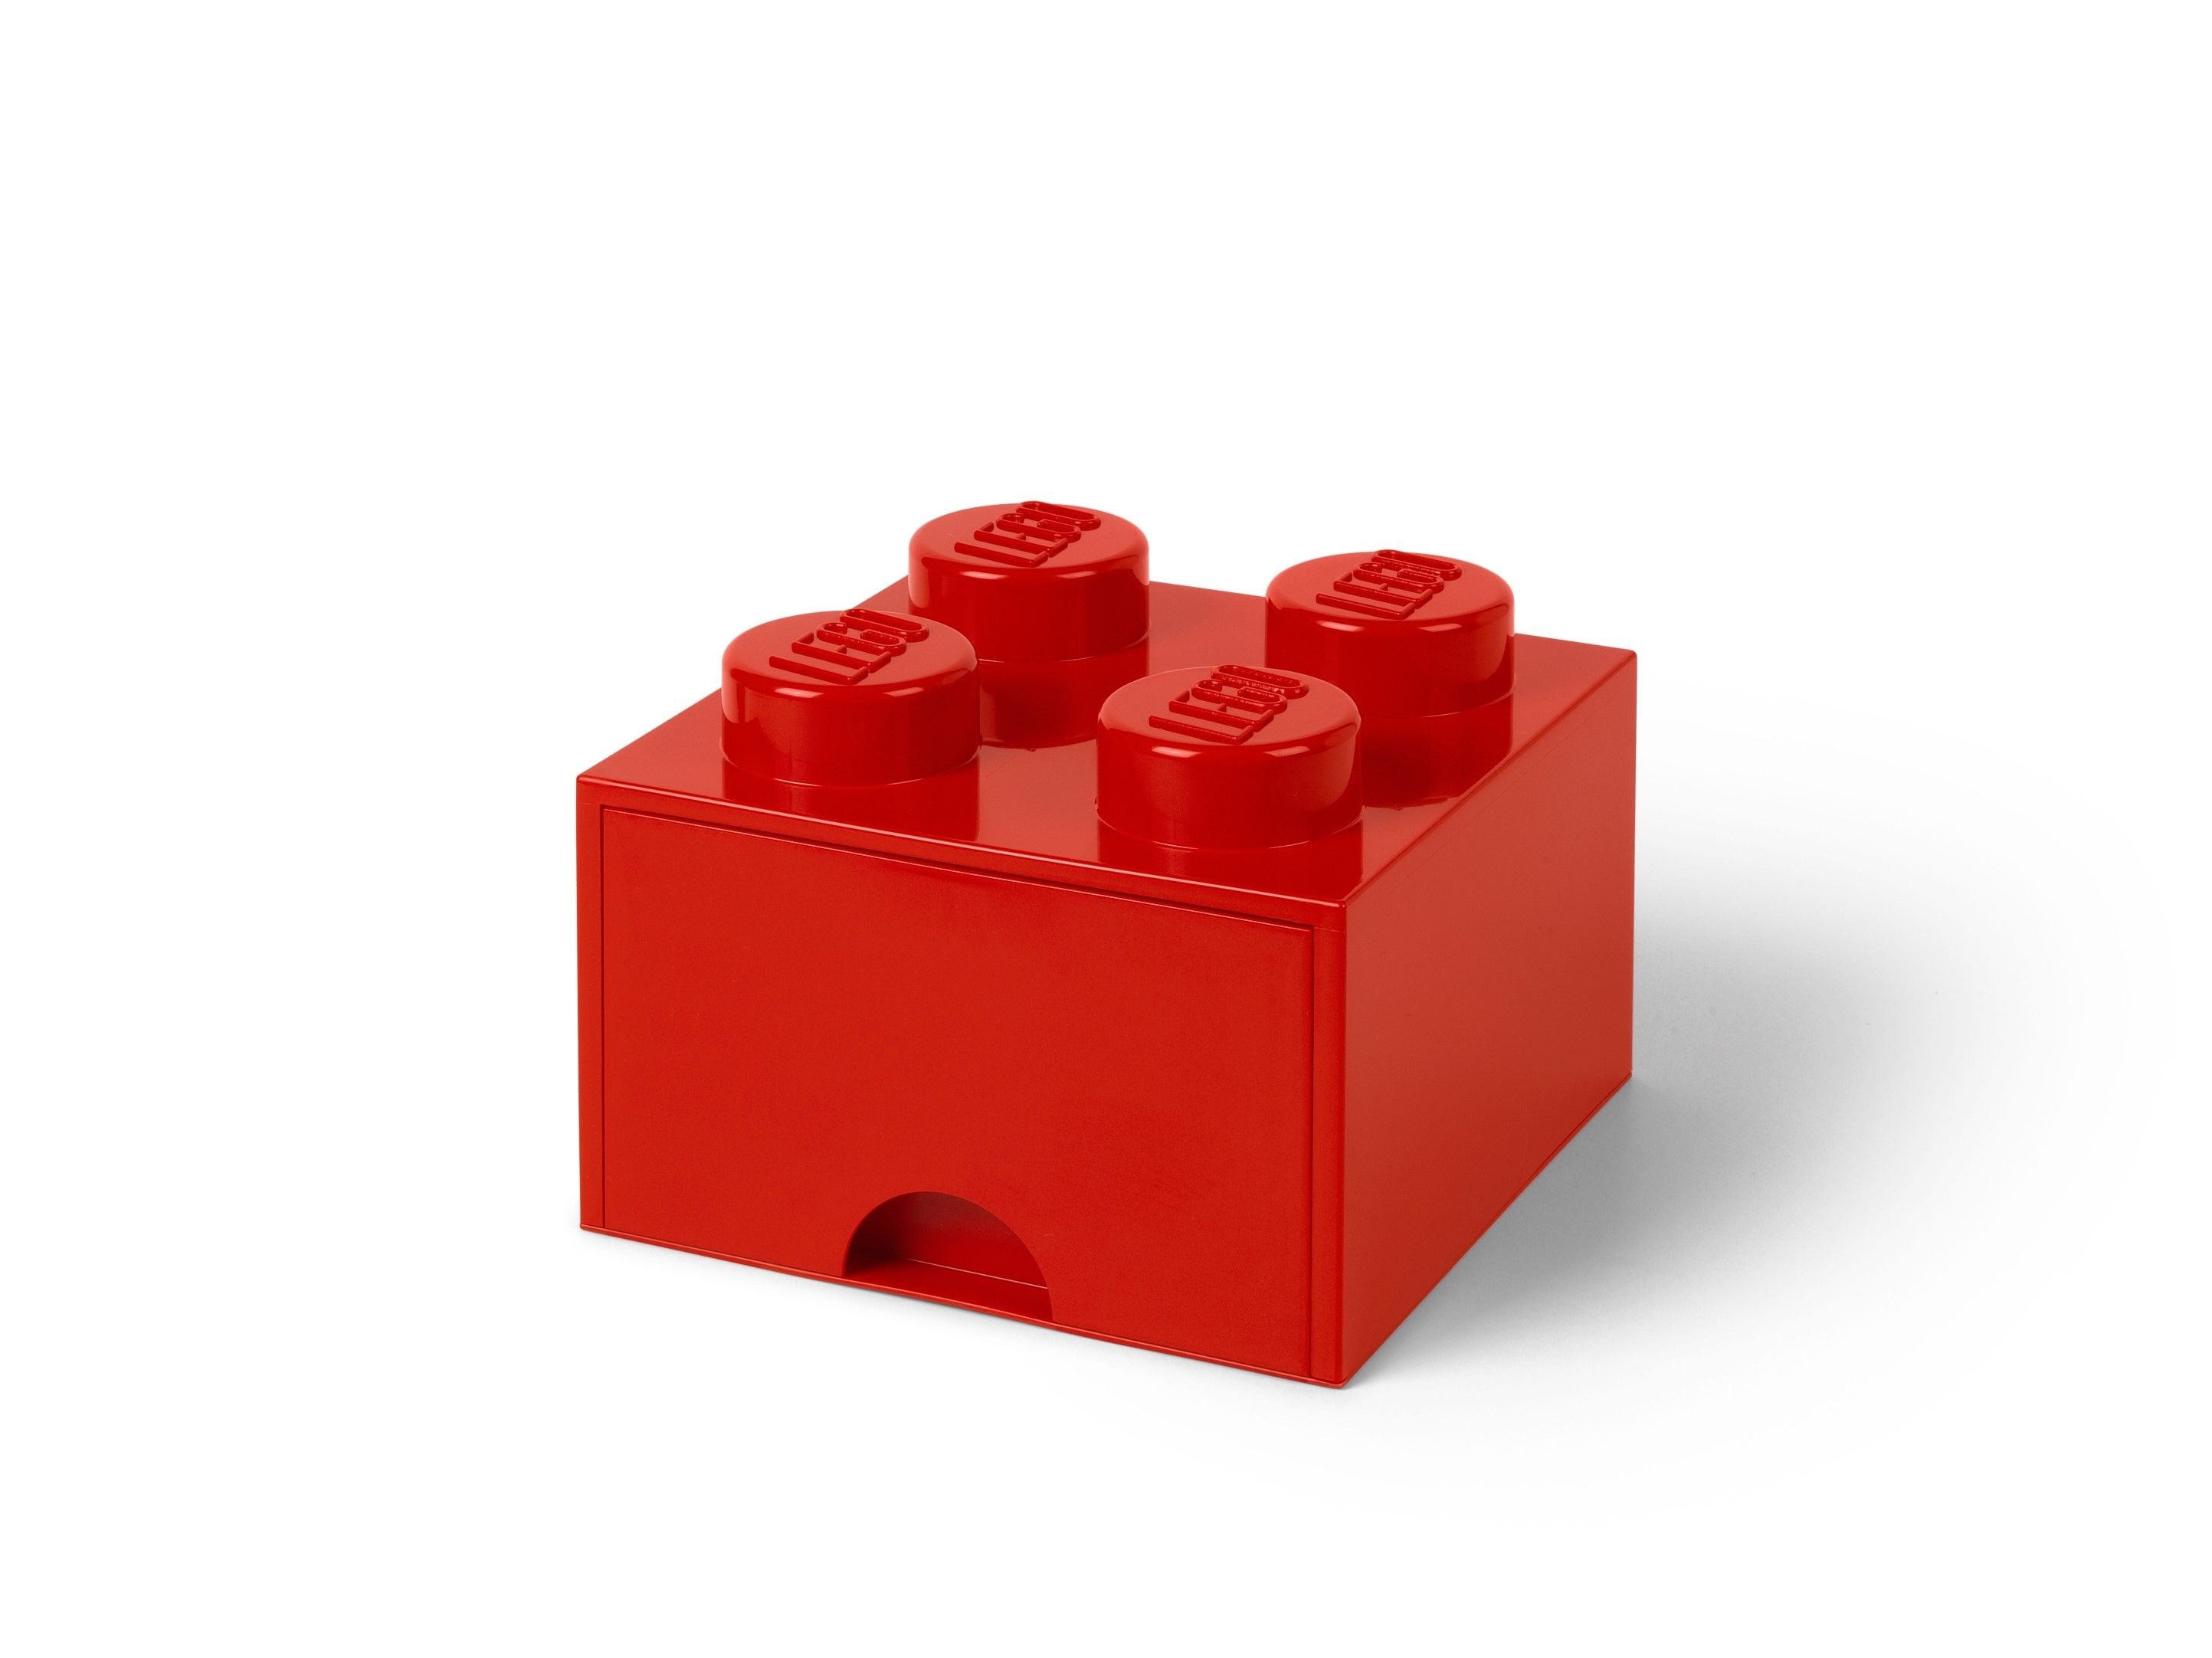 LEGO Gear 5006140 AUFBEWAHRUNGSSTEIN MIT SCHUBFACH UND 4 NOPPEN IN ROT LEGO_5005402.jpg